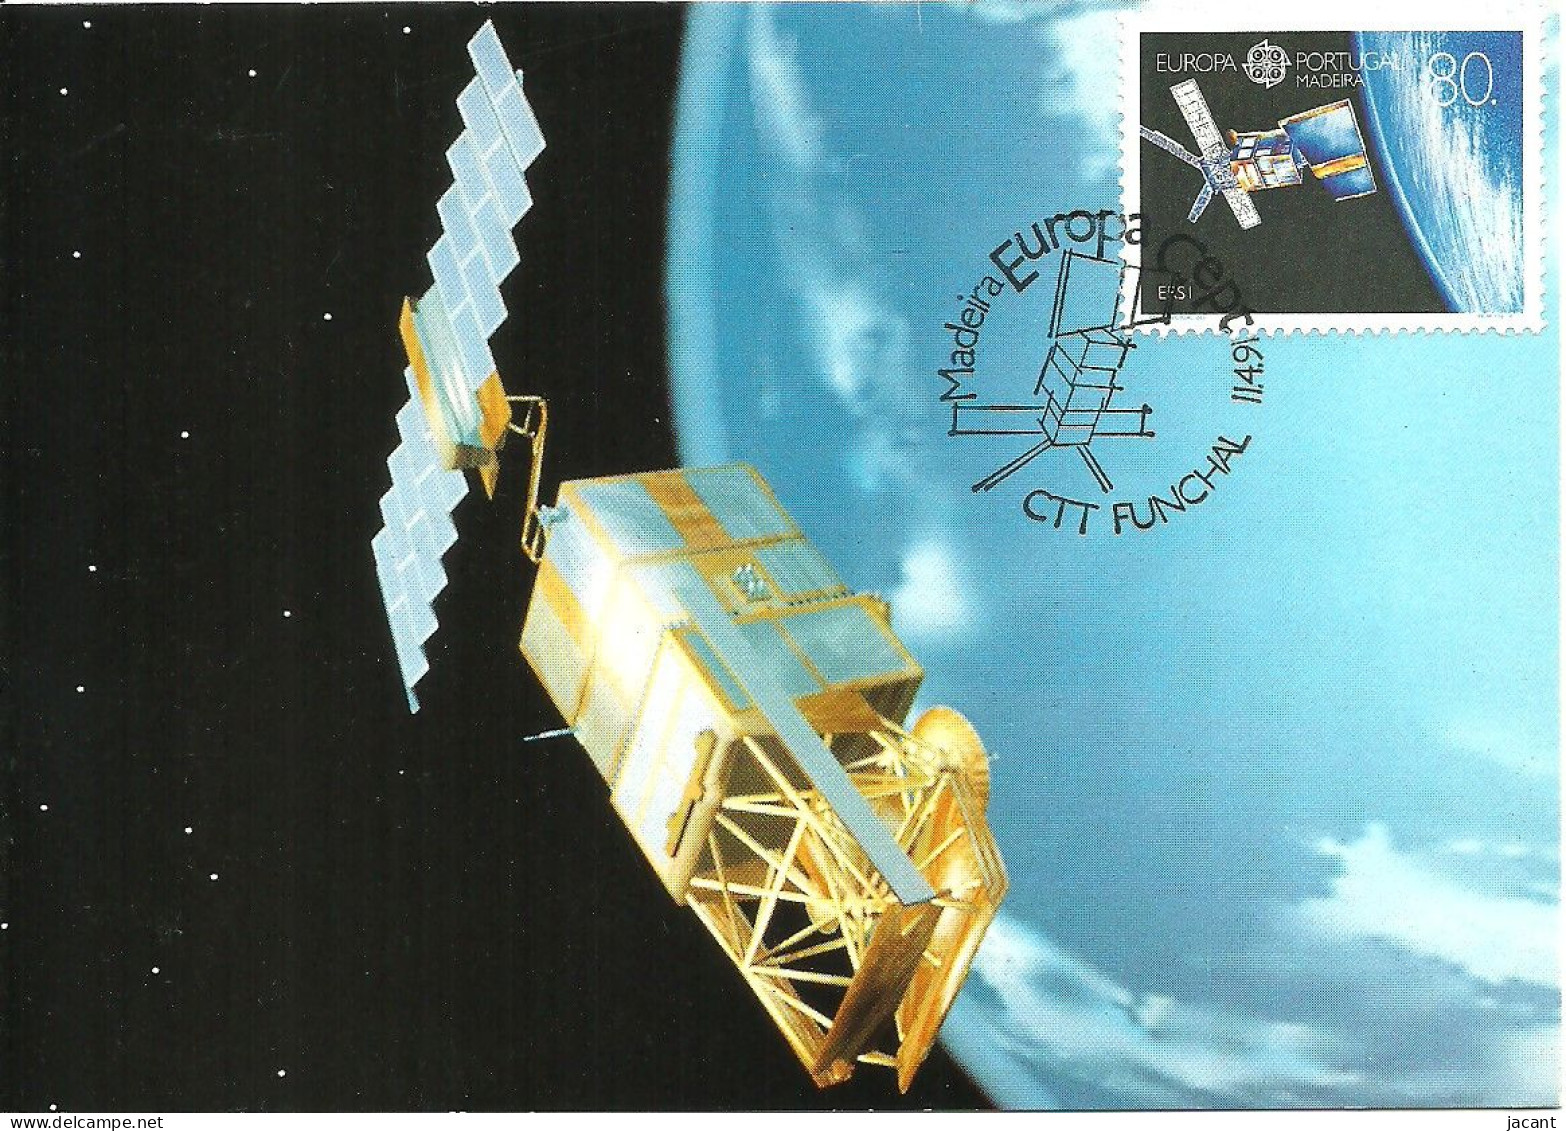 30835 - Carte Maximum - Portugal Madeira - Europa - Satetite ERS-1 Satellite - Cartoline Maximum